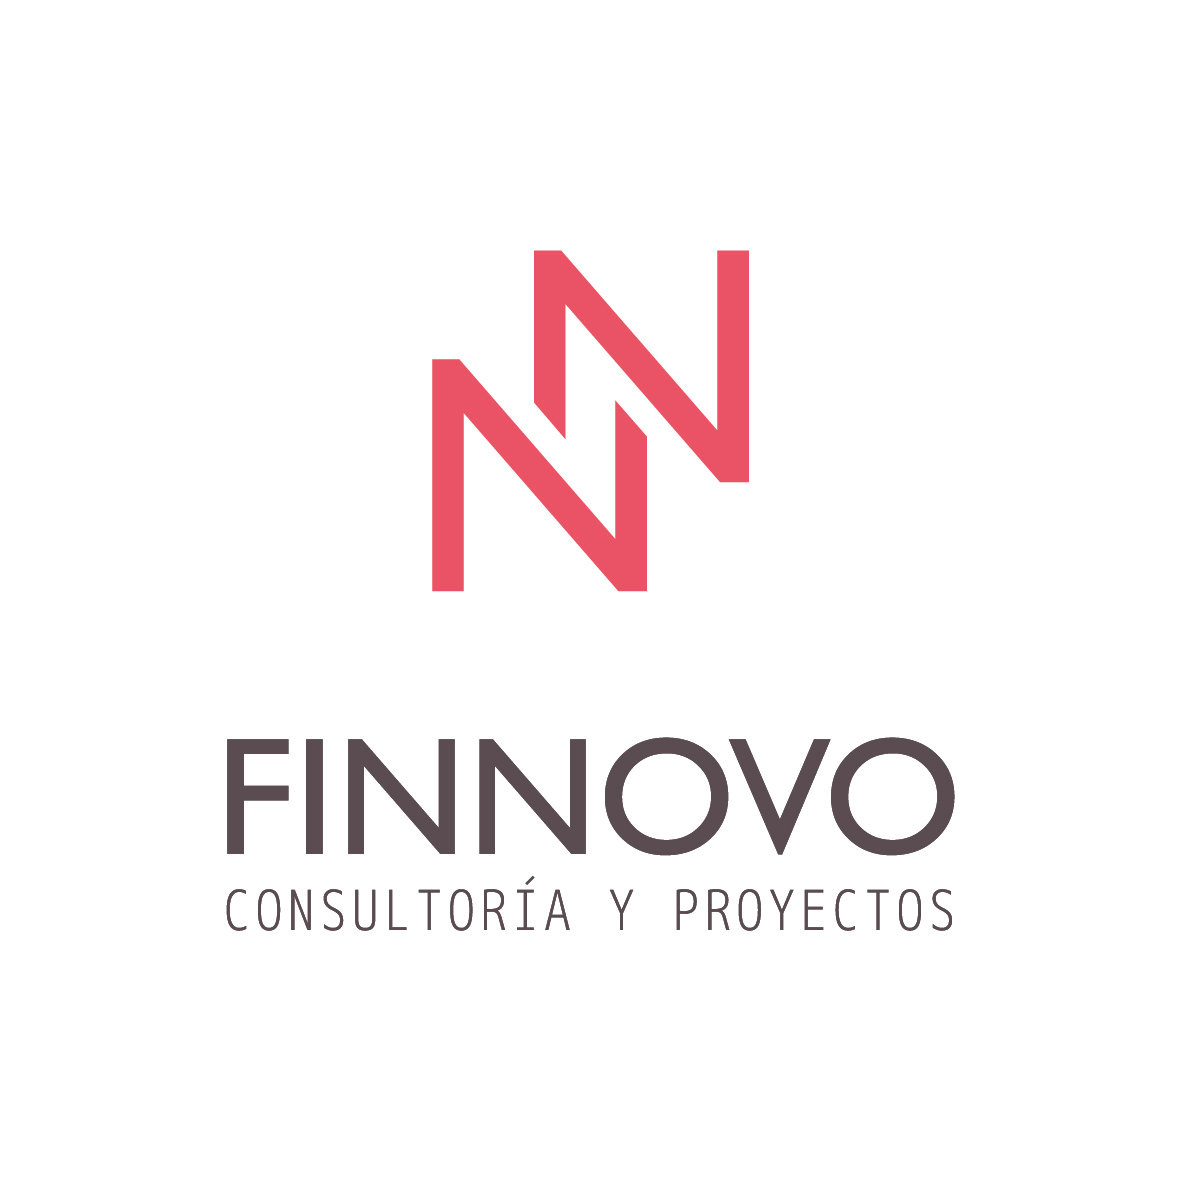 Finnovo Consultora y Proyectos